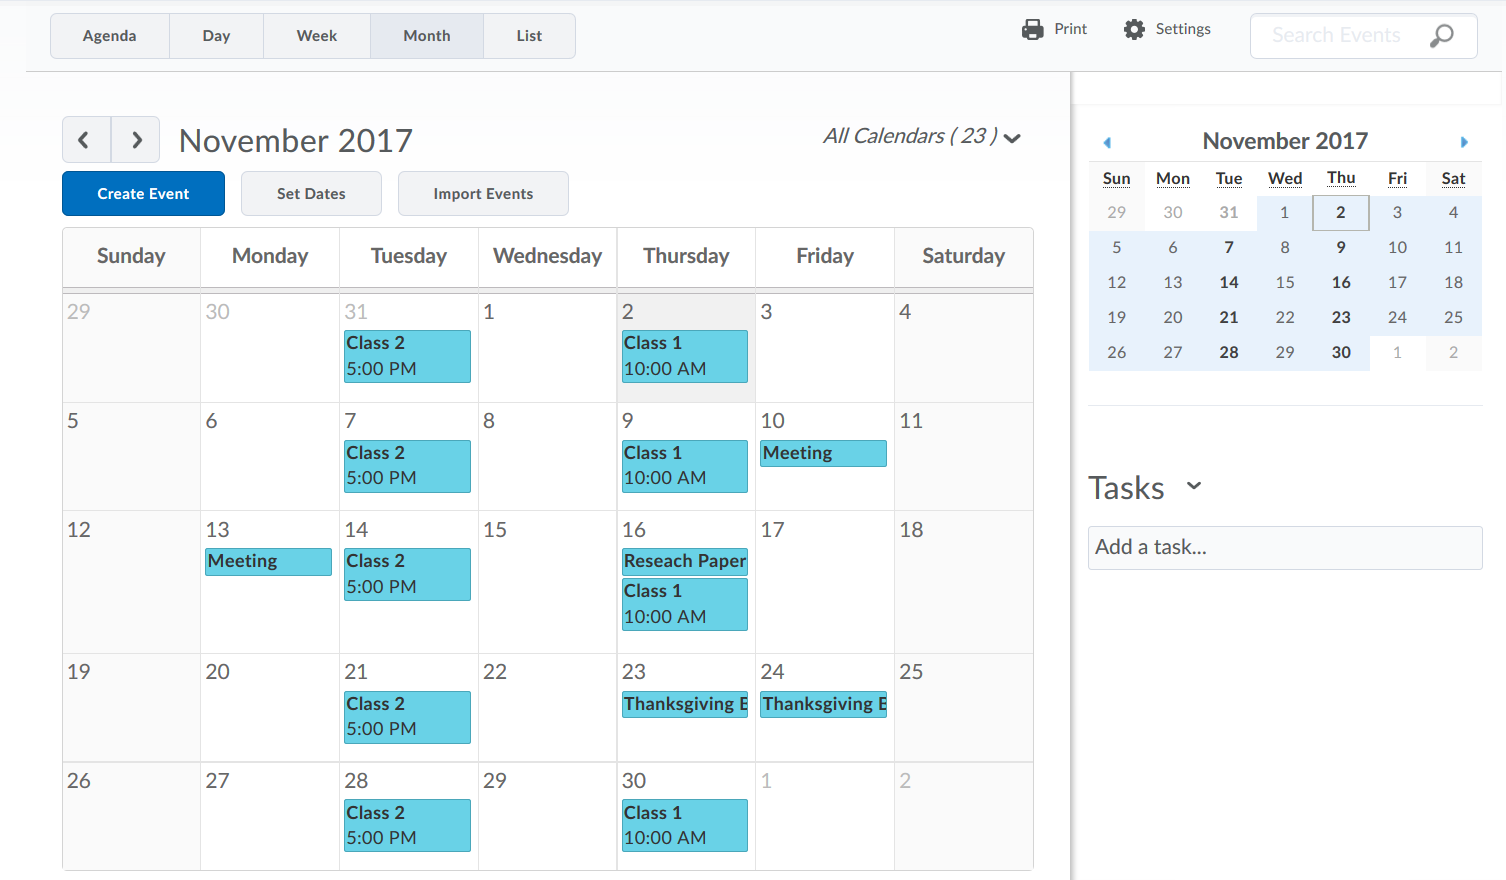 Calendar Interface Overview